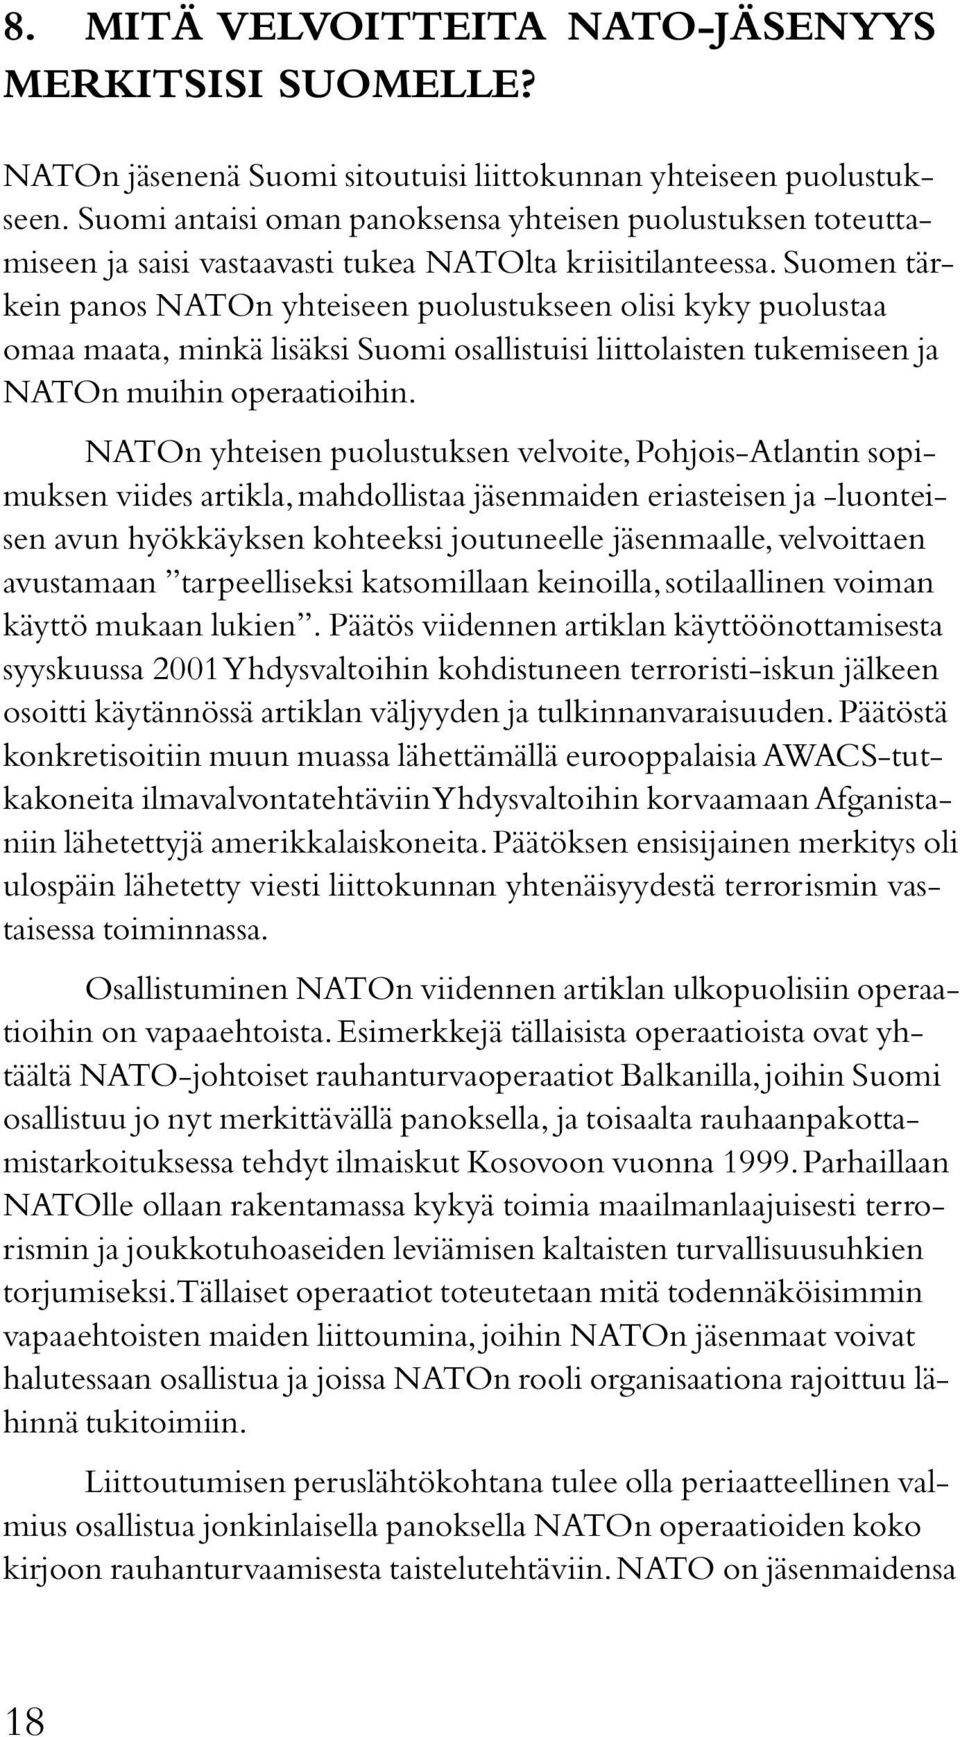 Suomen tärkein panos NATOn yhteiseen puolustukseen olisi kyky puolustaa omaa maata, minkä lisäksi Suomi osallistuisi liittolaisten tukemiseen ja NATOn muihin operaatioihin.